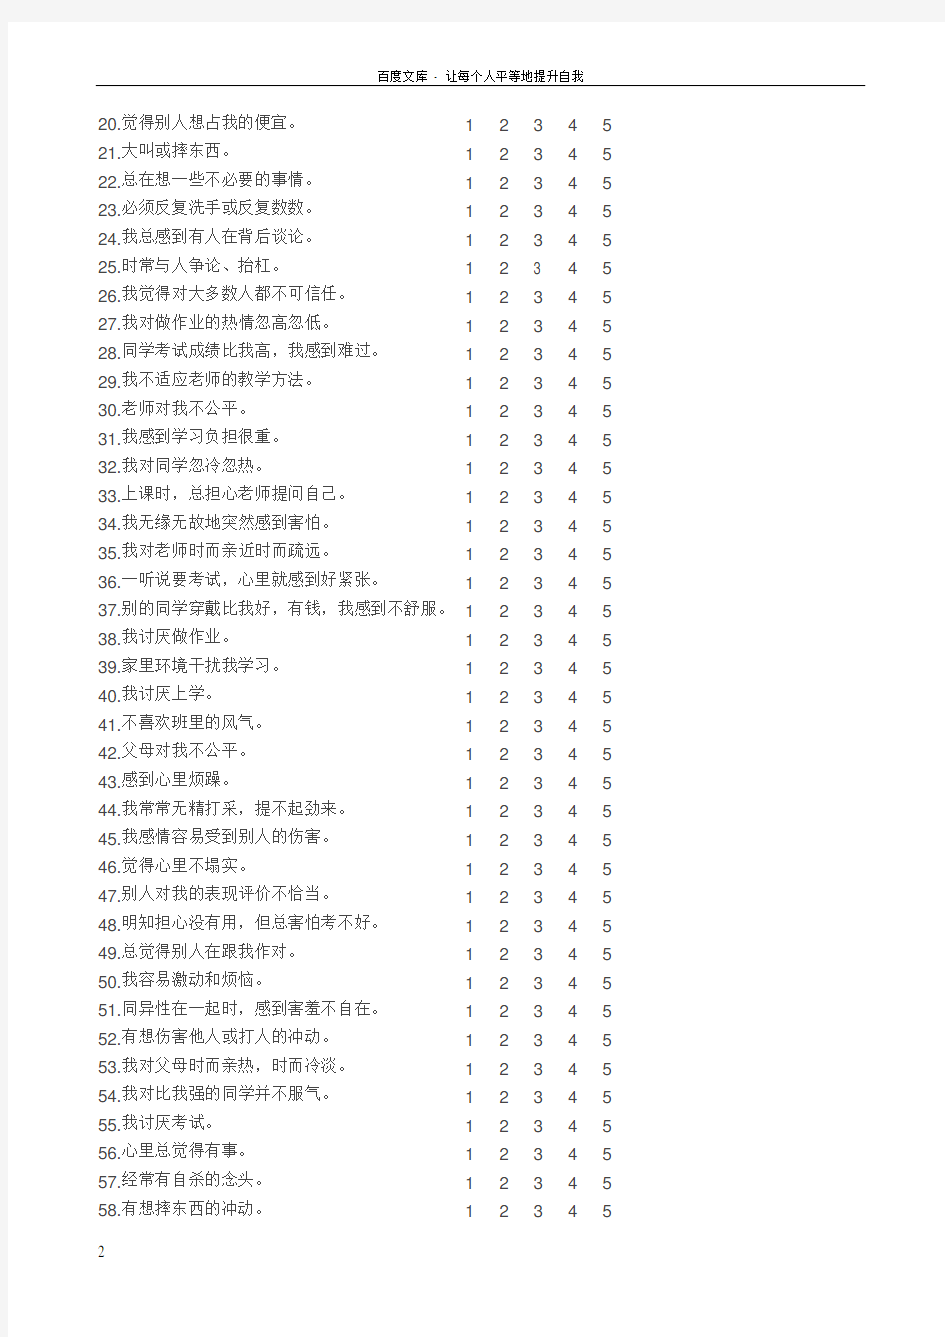 中国中学生心理健康量表及评分标准